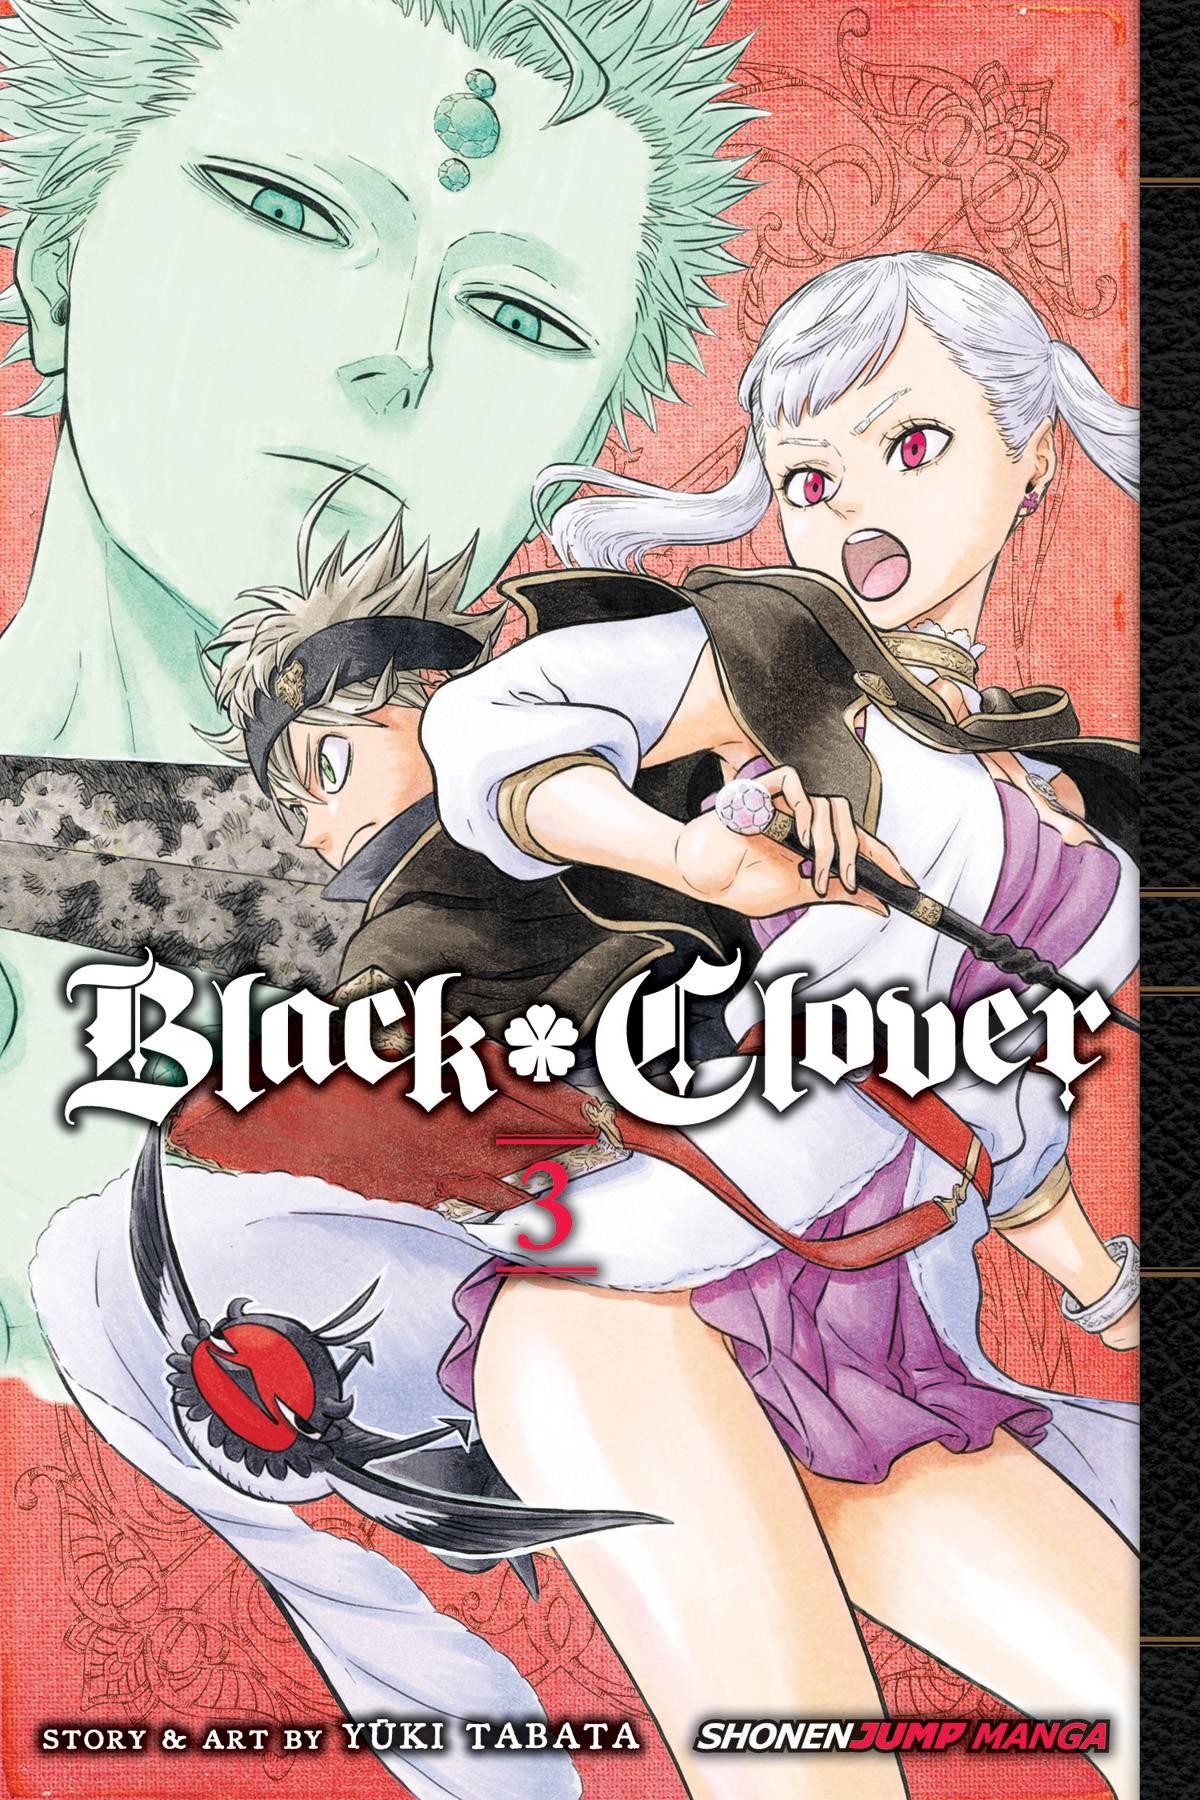 BLACK CLOVER VOLUME 03